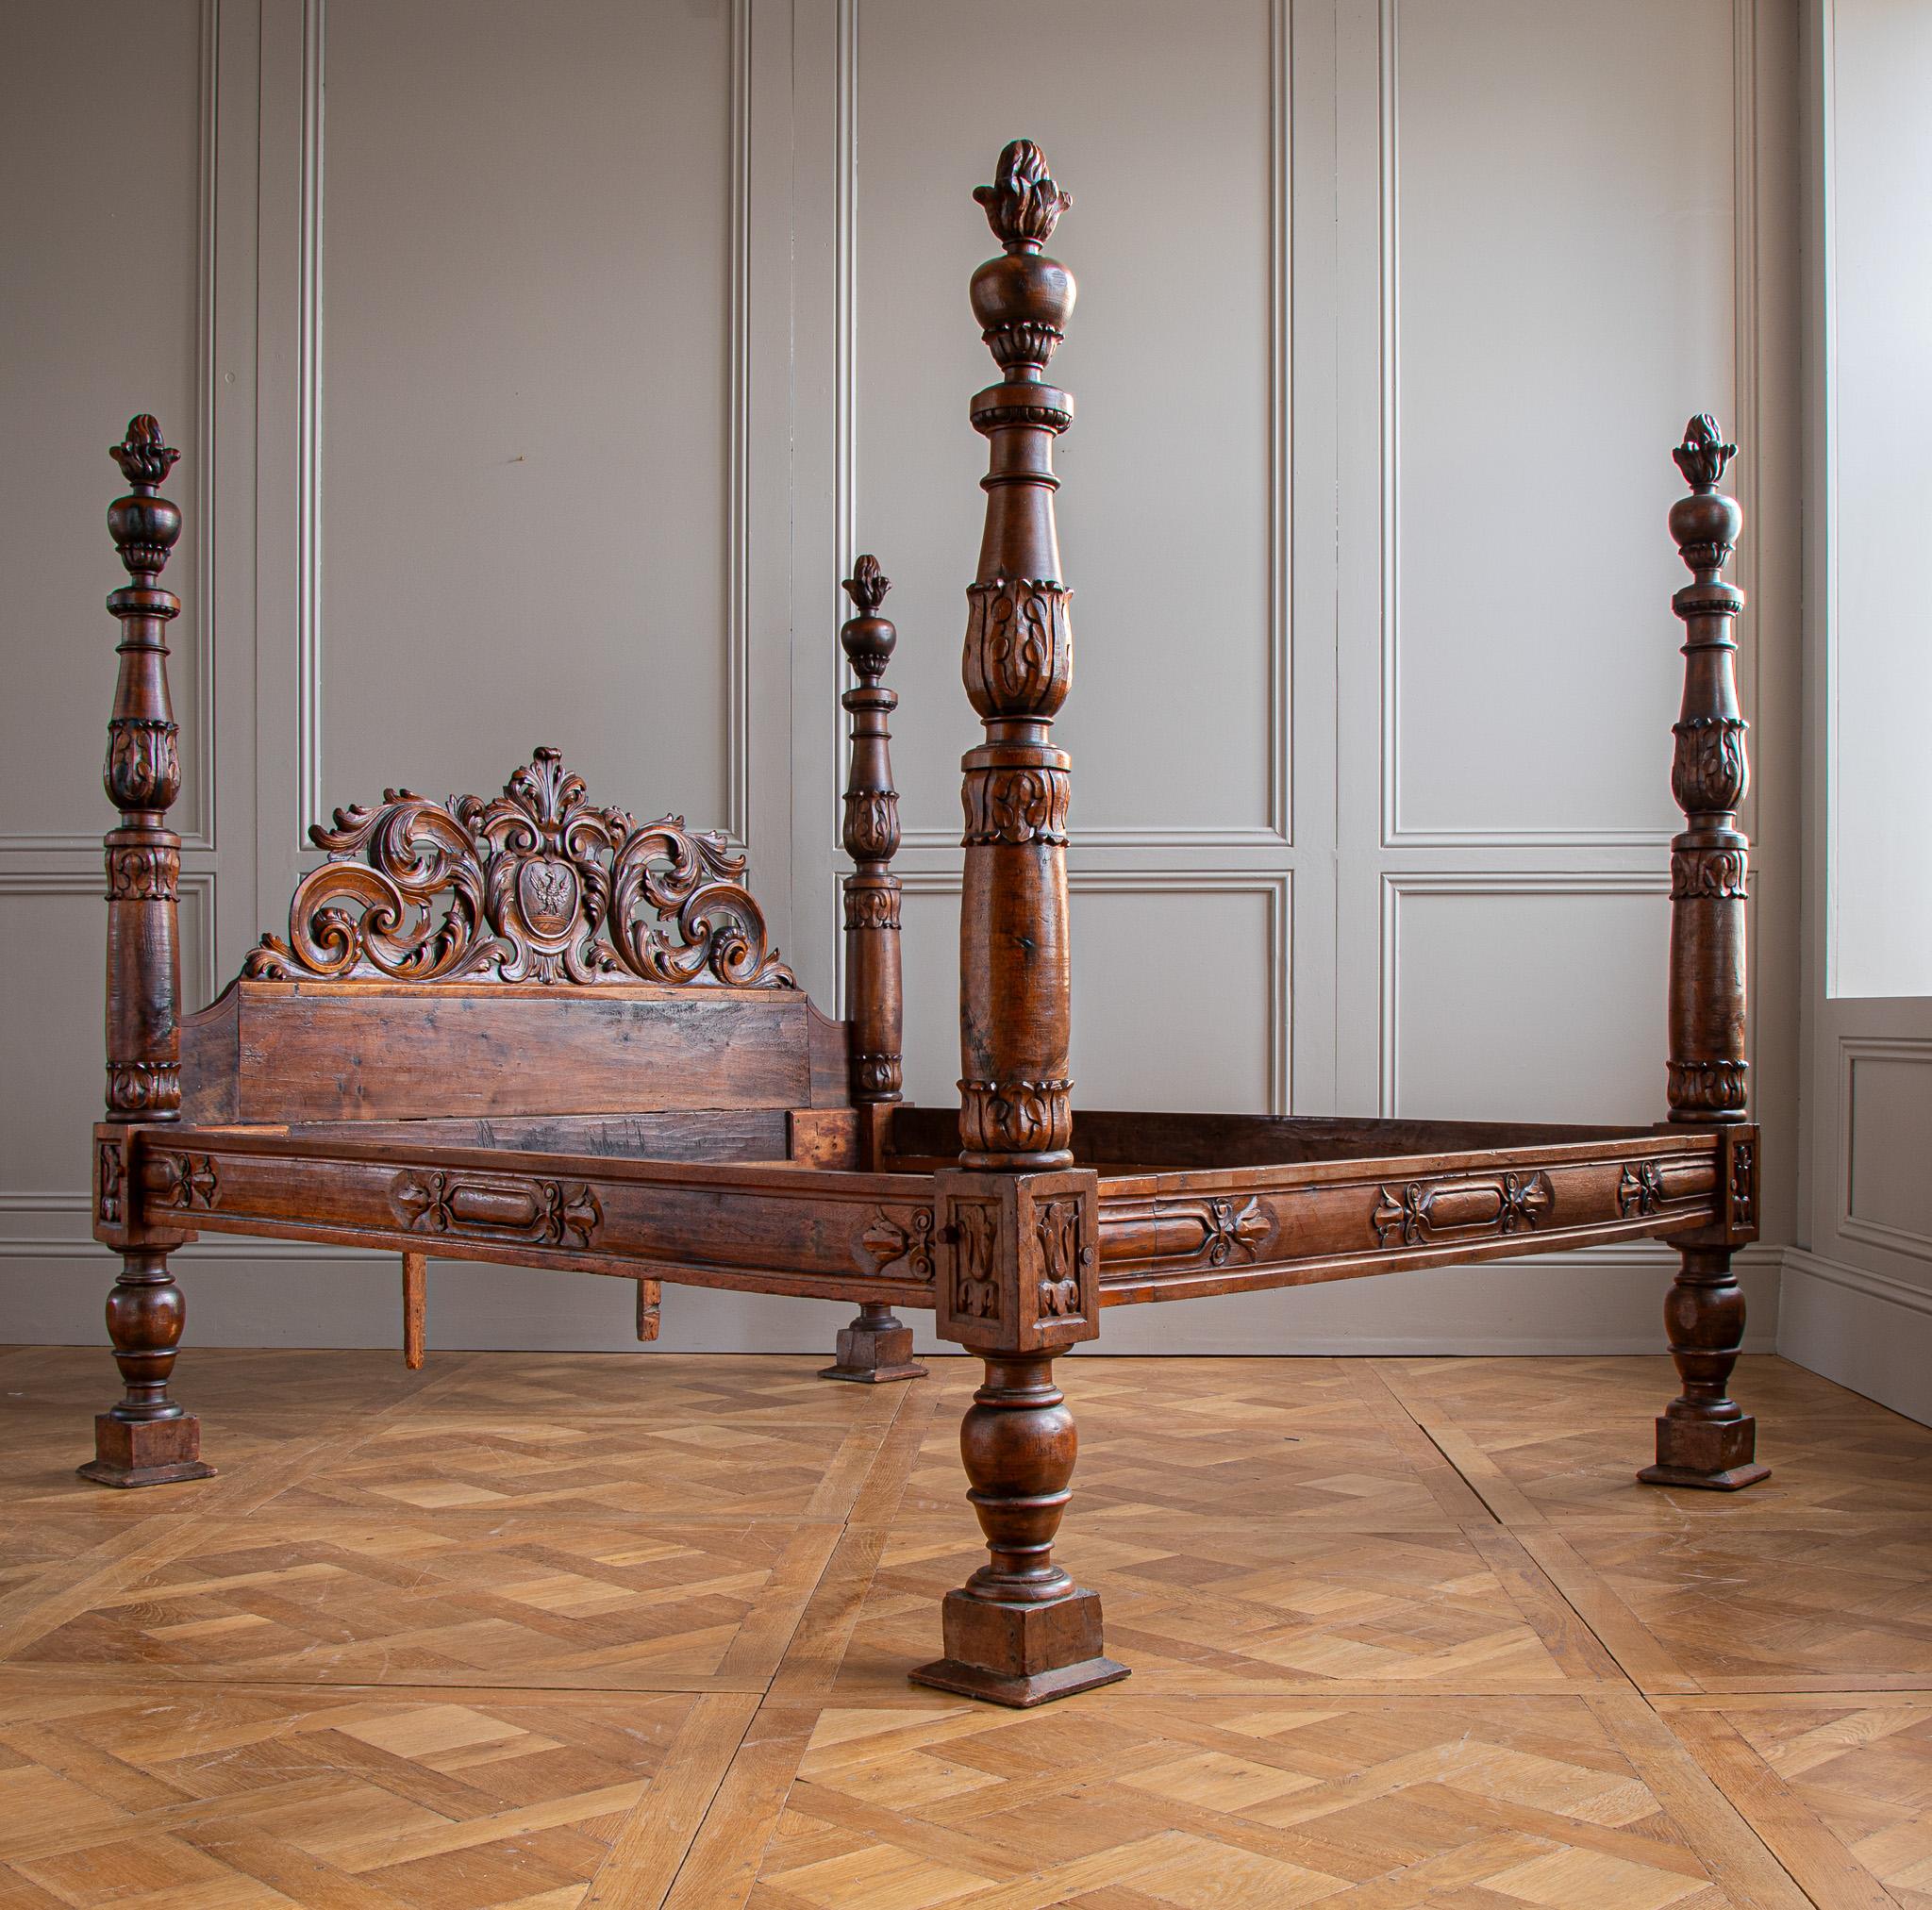 Vers le milieu des années 1800, un impressionnant lit à baldaquin de style baroque provenant du nord de l'Italie. Le châlit, sculpté dans du noyer, présente une belle brillance profonde avec des reflets chauds naturels sur de nombreuses sections